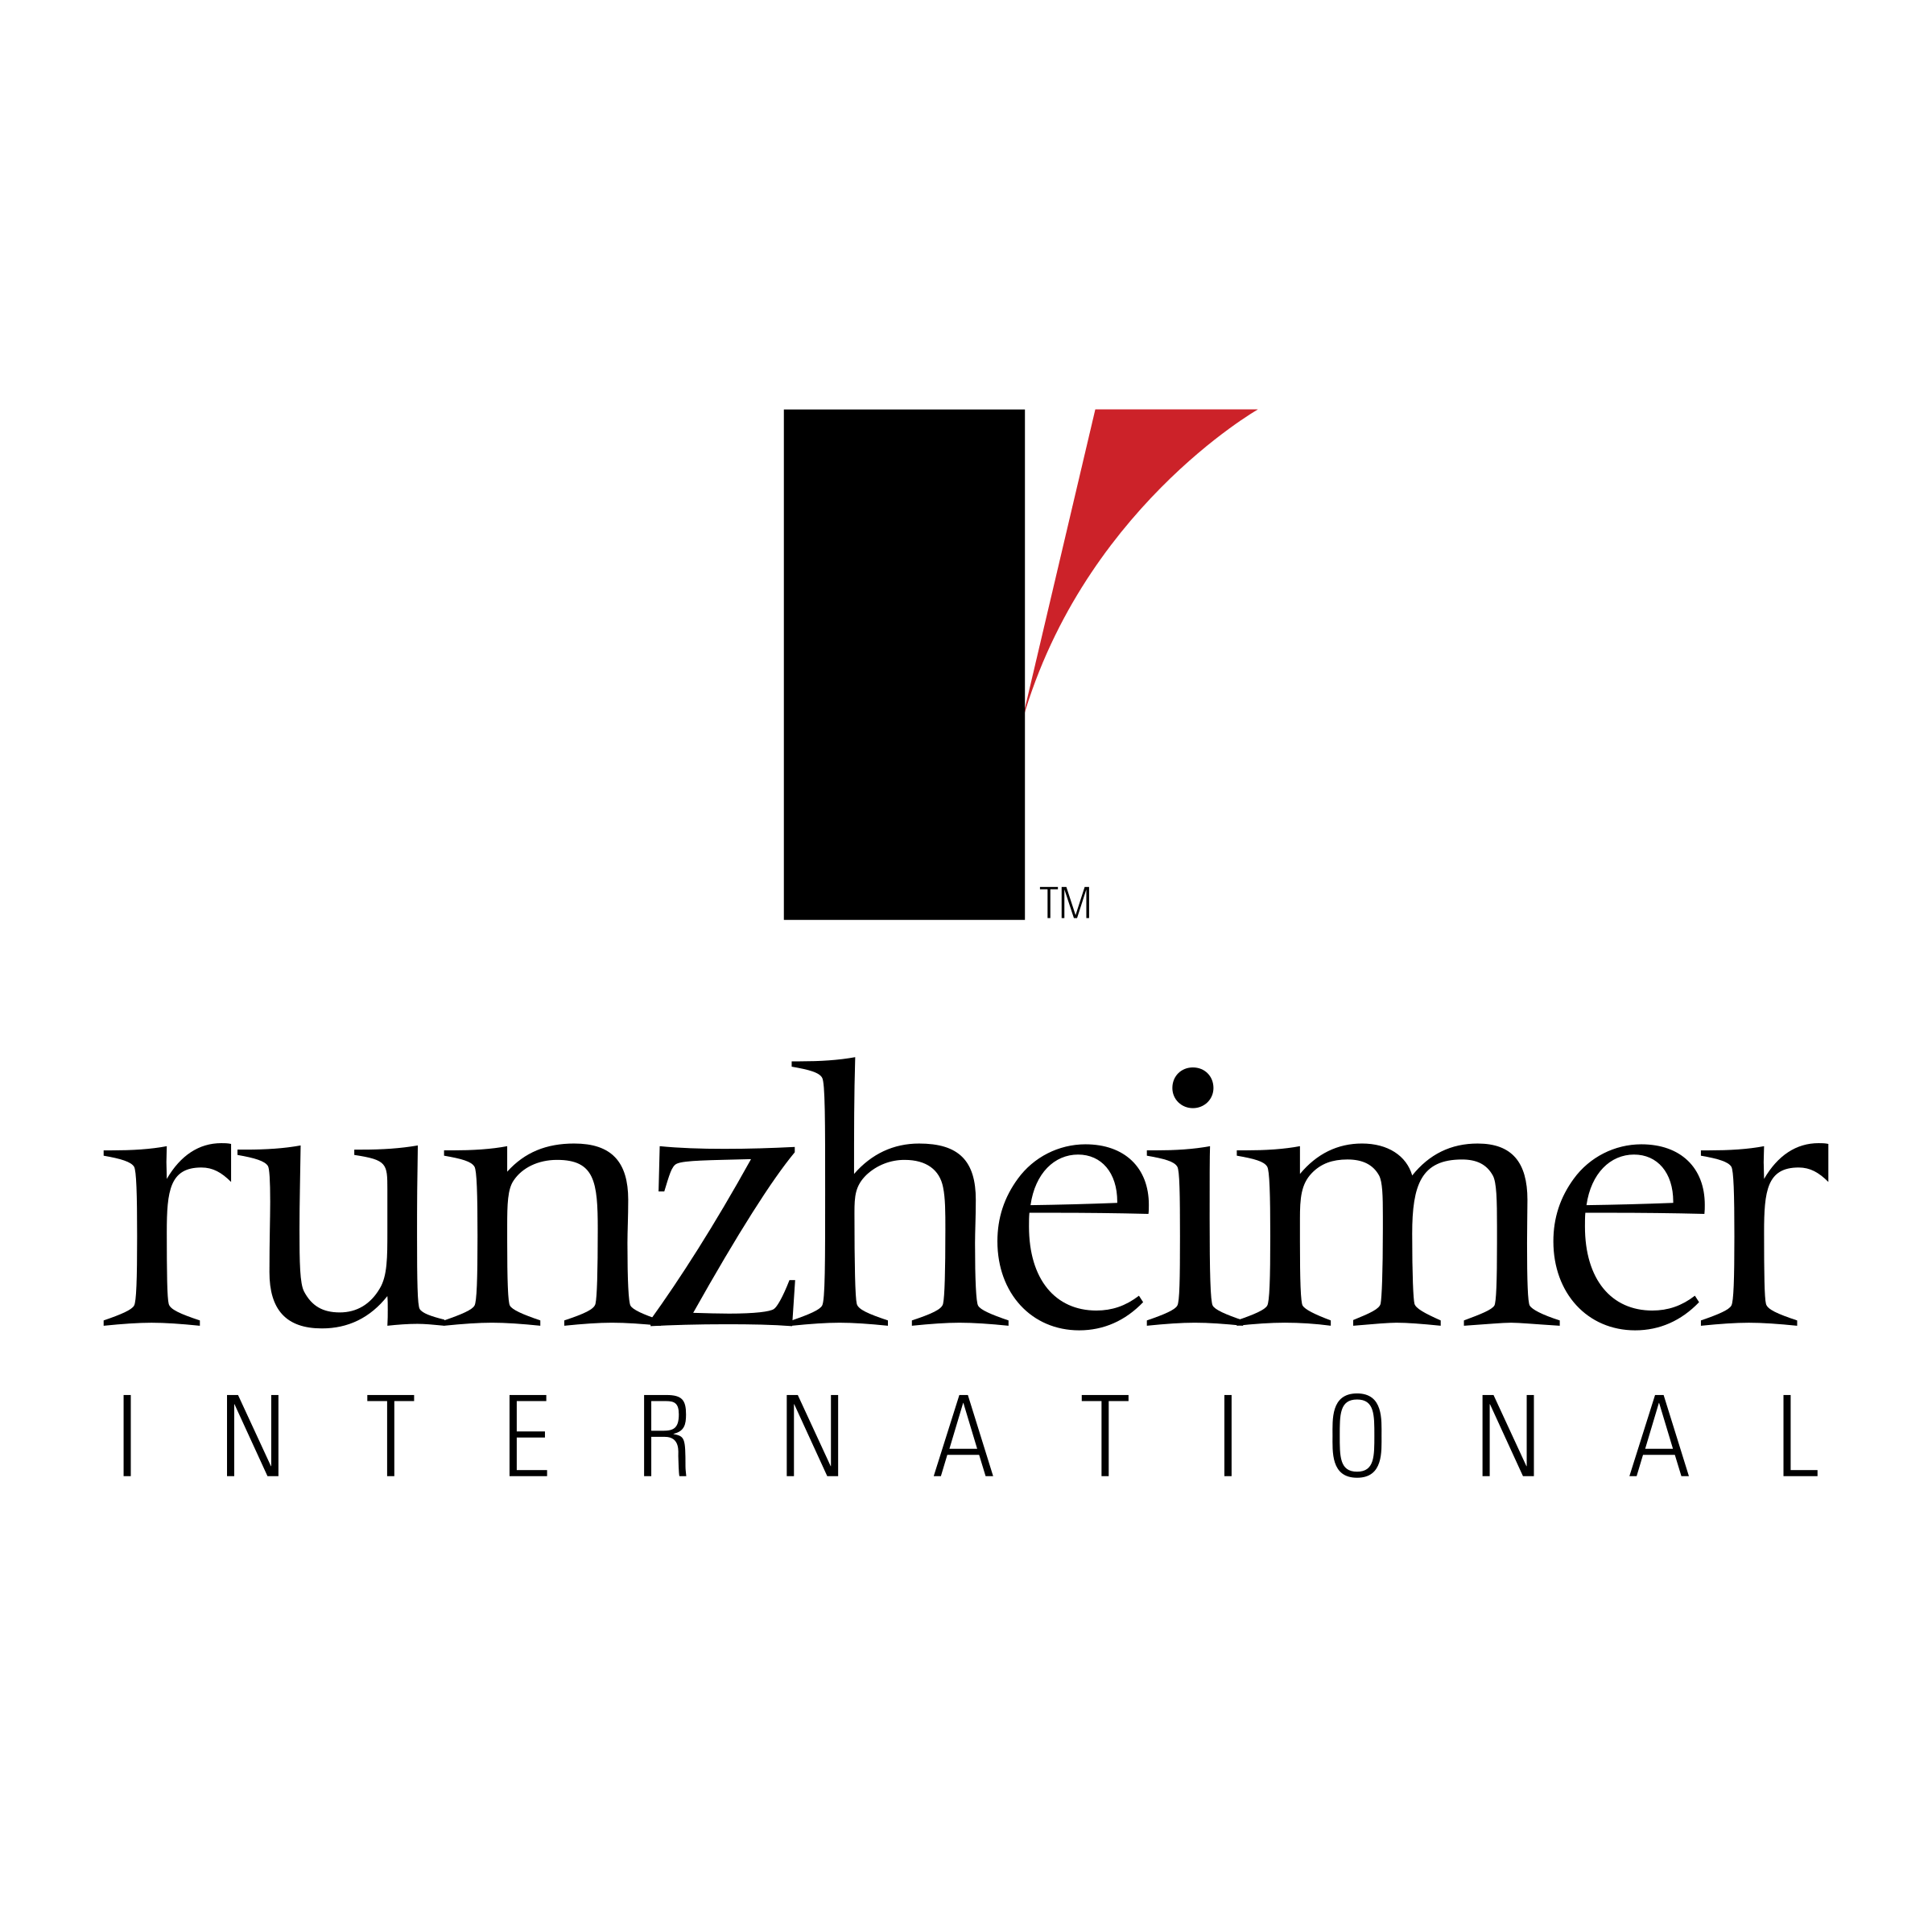 Runzheimer Logo - Runzheimer International Logo PNG Transparent & SVG Vector